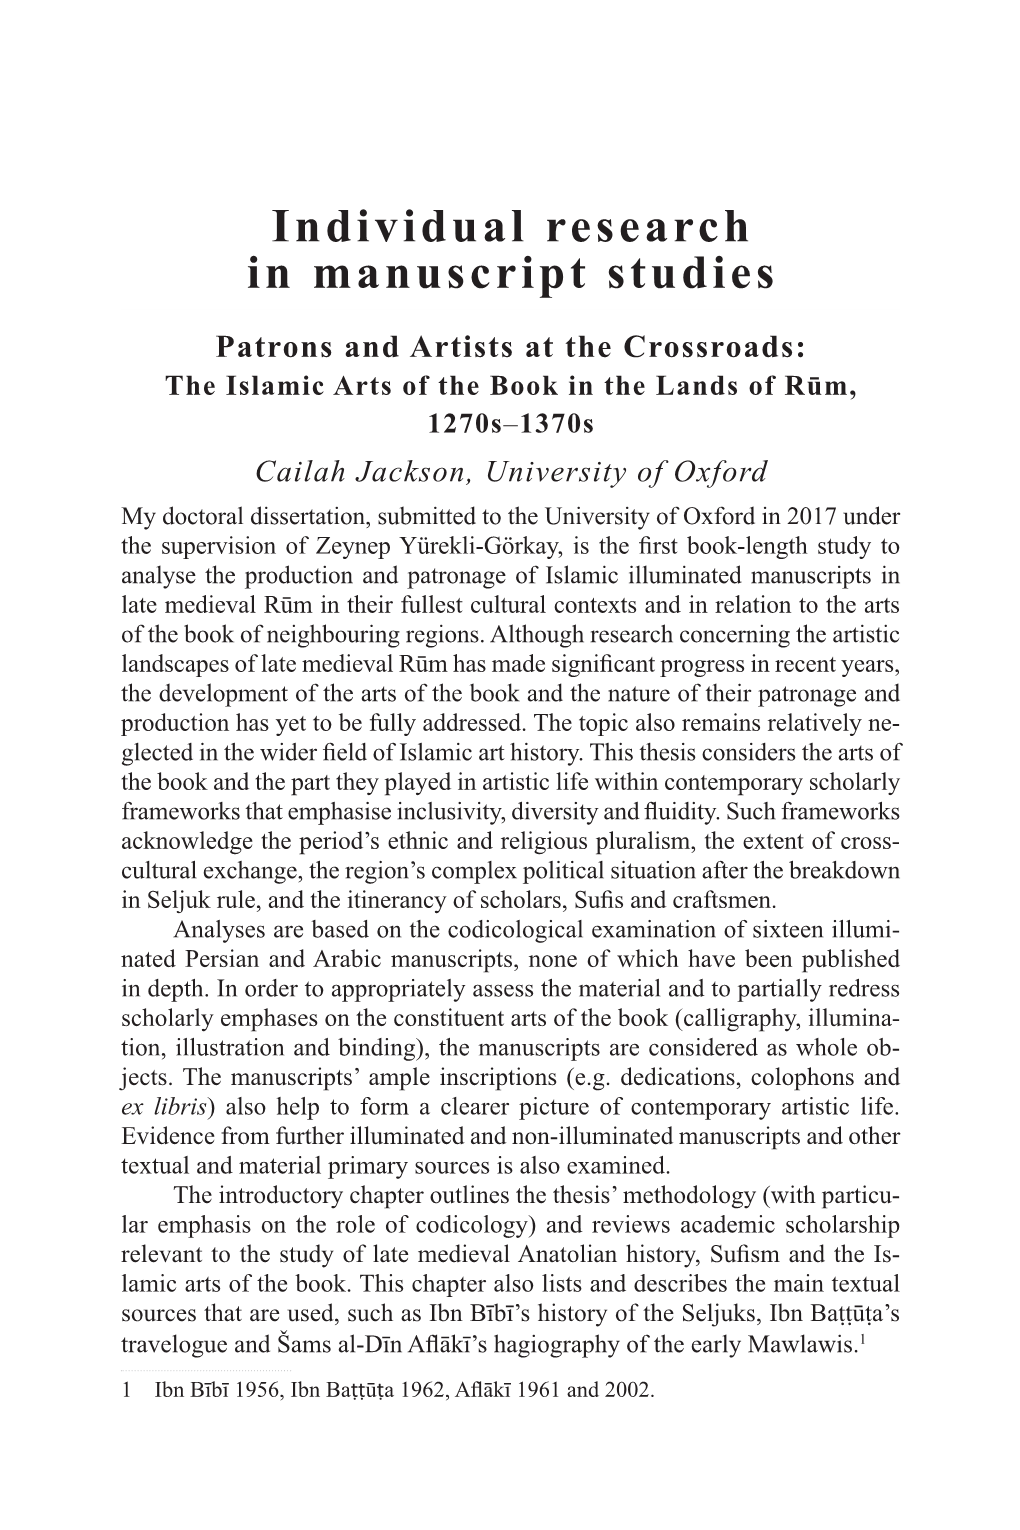 Individual Research in Manuscript Studies